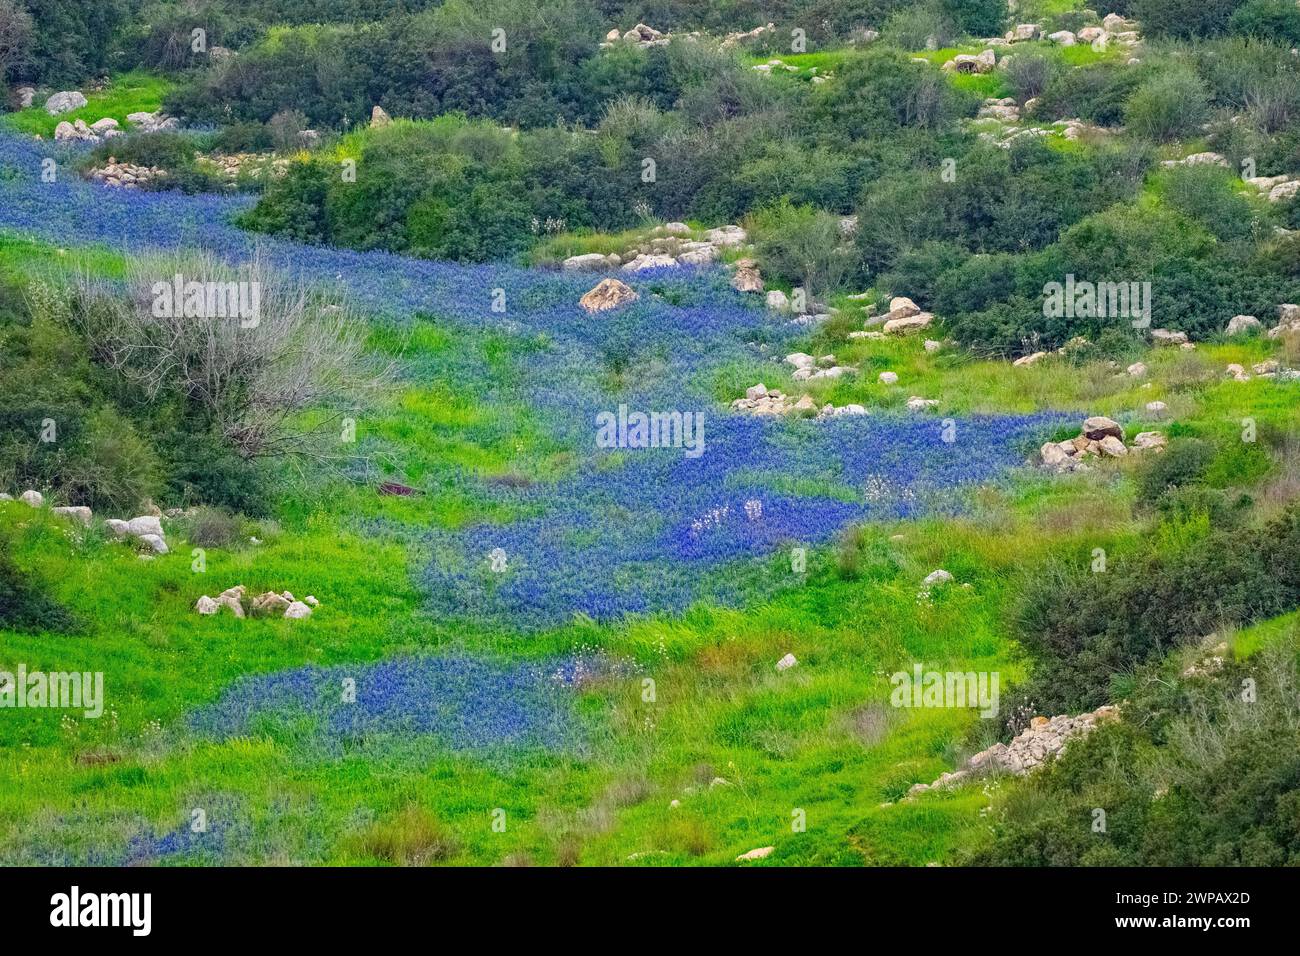 Teppiche des blauen Lupinus pilosus in Israel. Lupinus pilosus, im Judäischen Vorgebirge allgemein als blaue Lupine bekannt Stockfoto